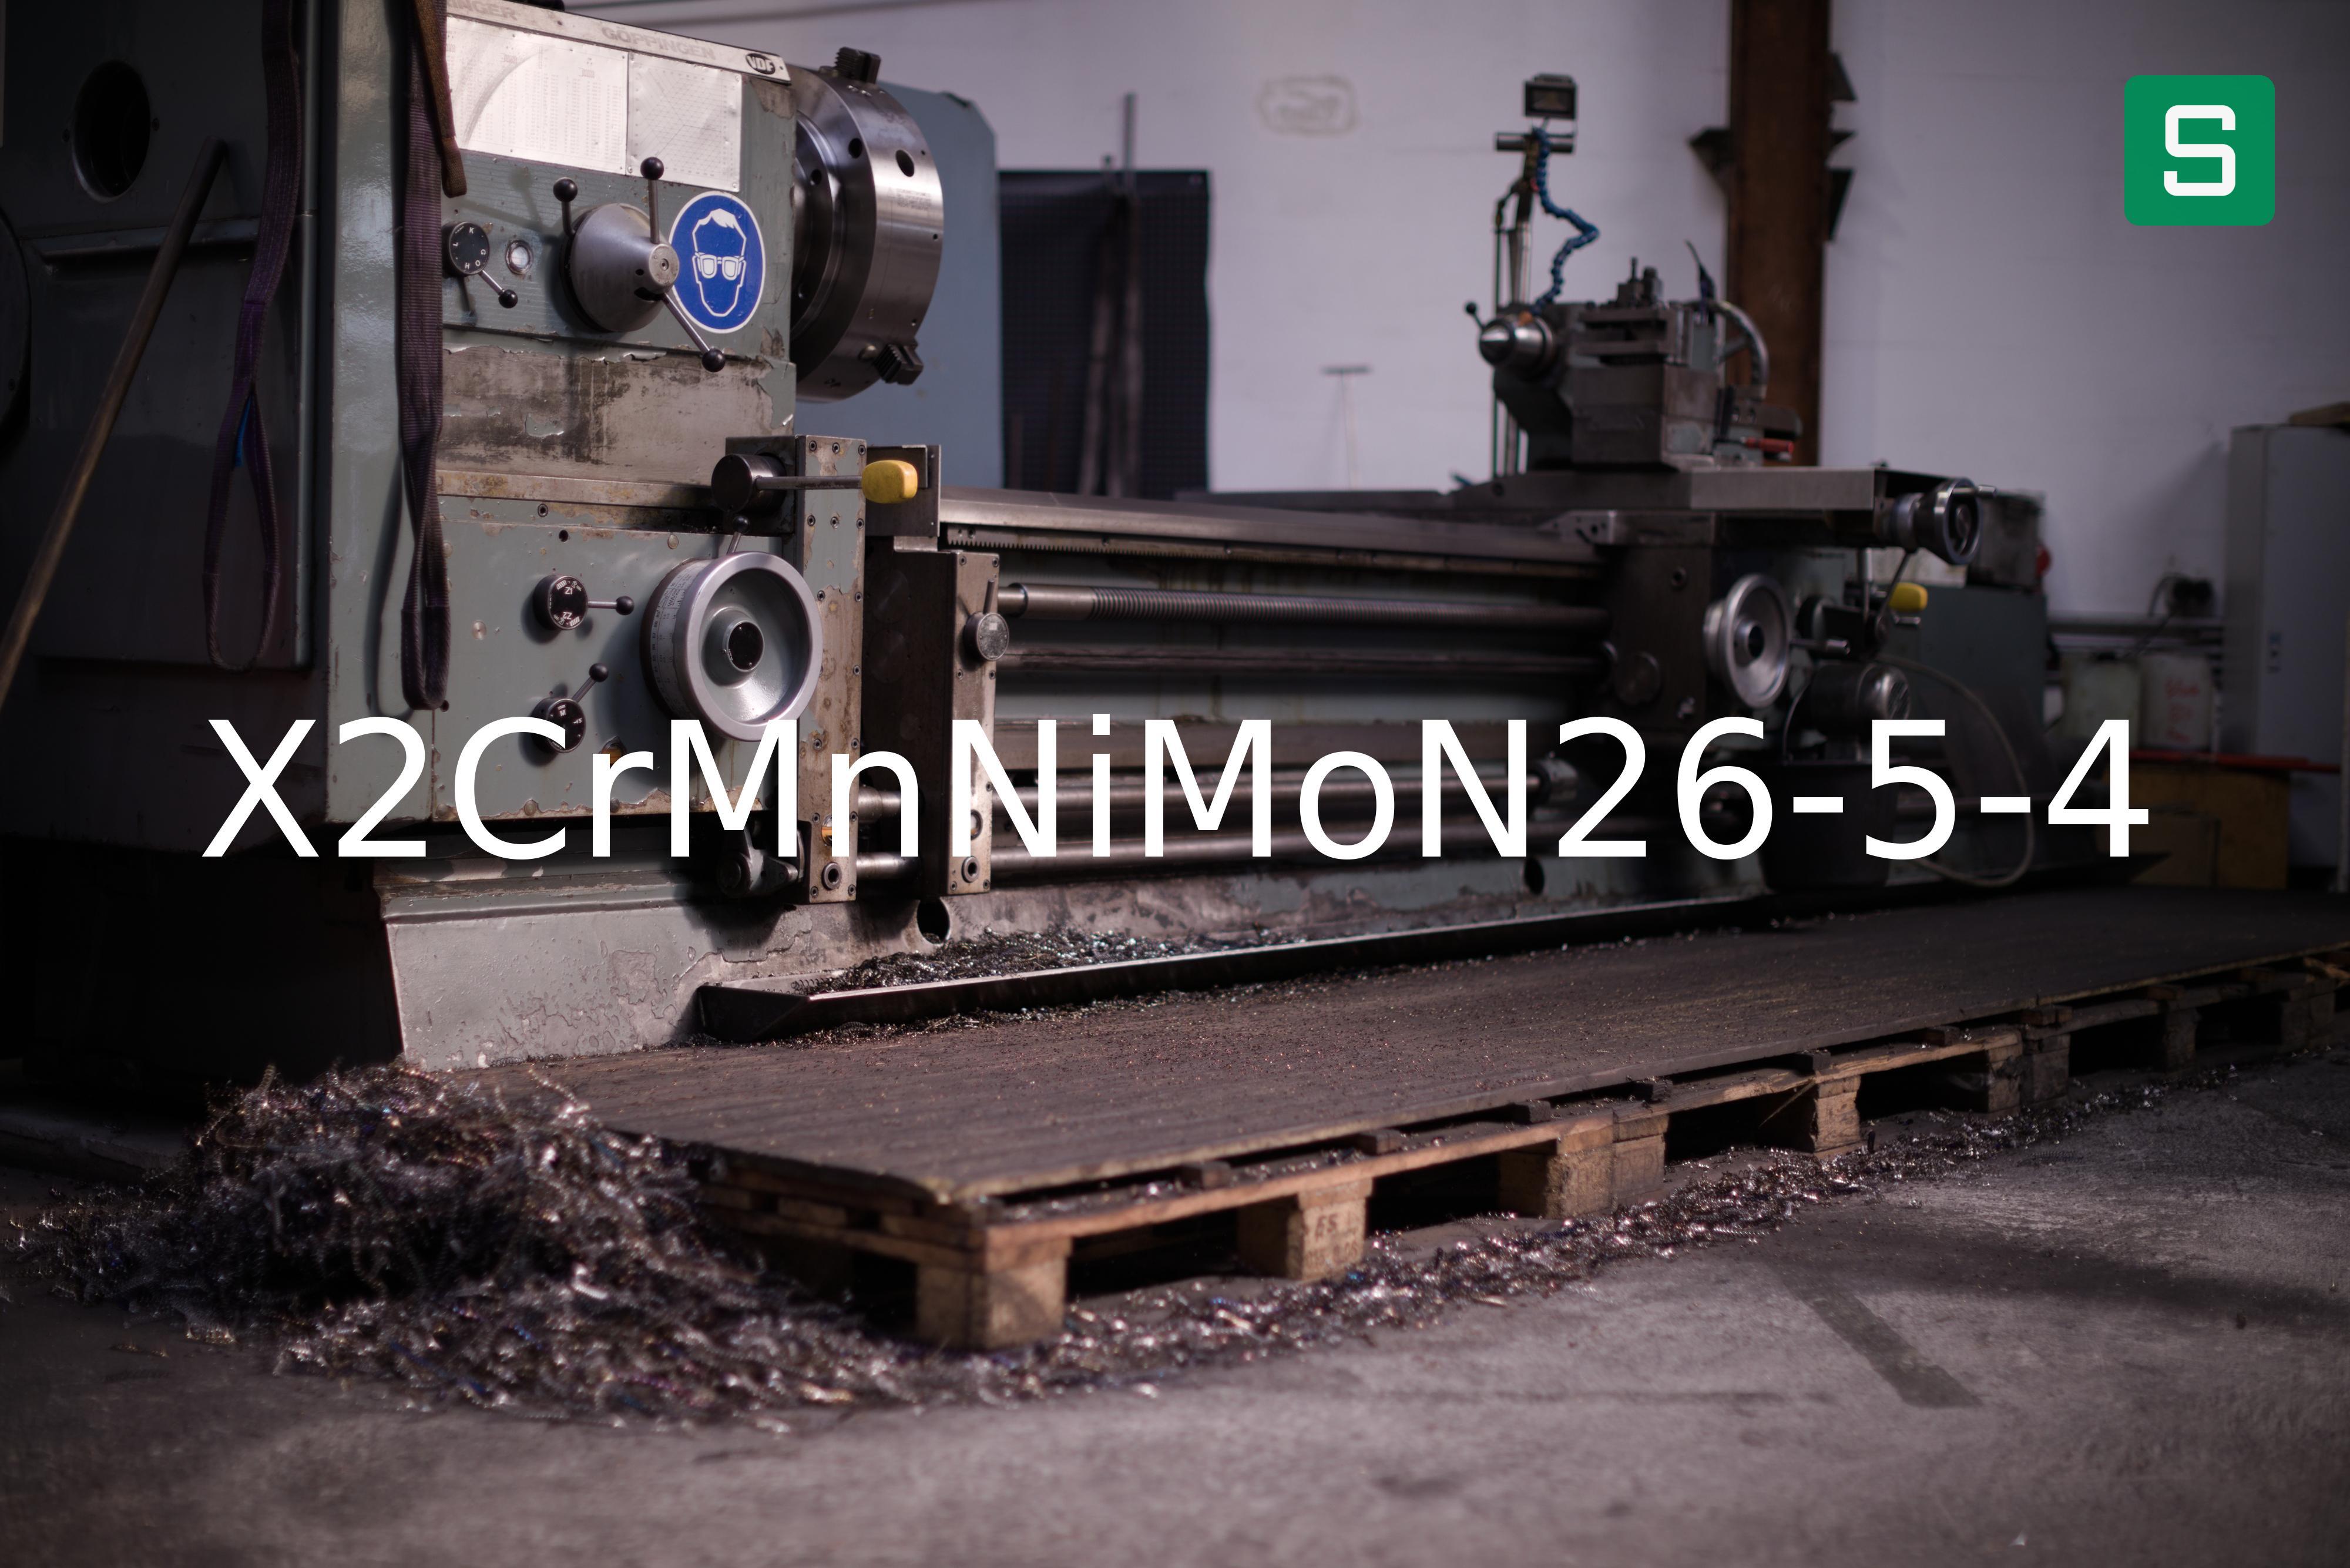 Steel Material: X2CrMnNiMoN26-5-4